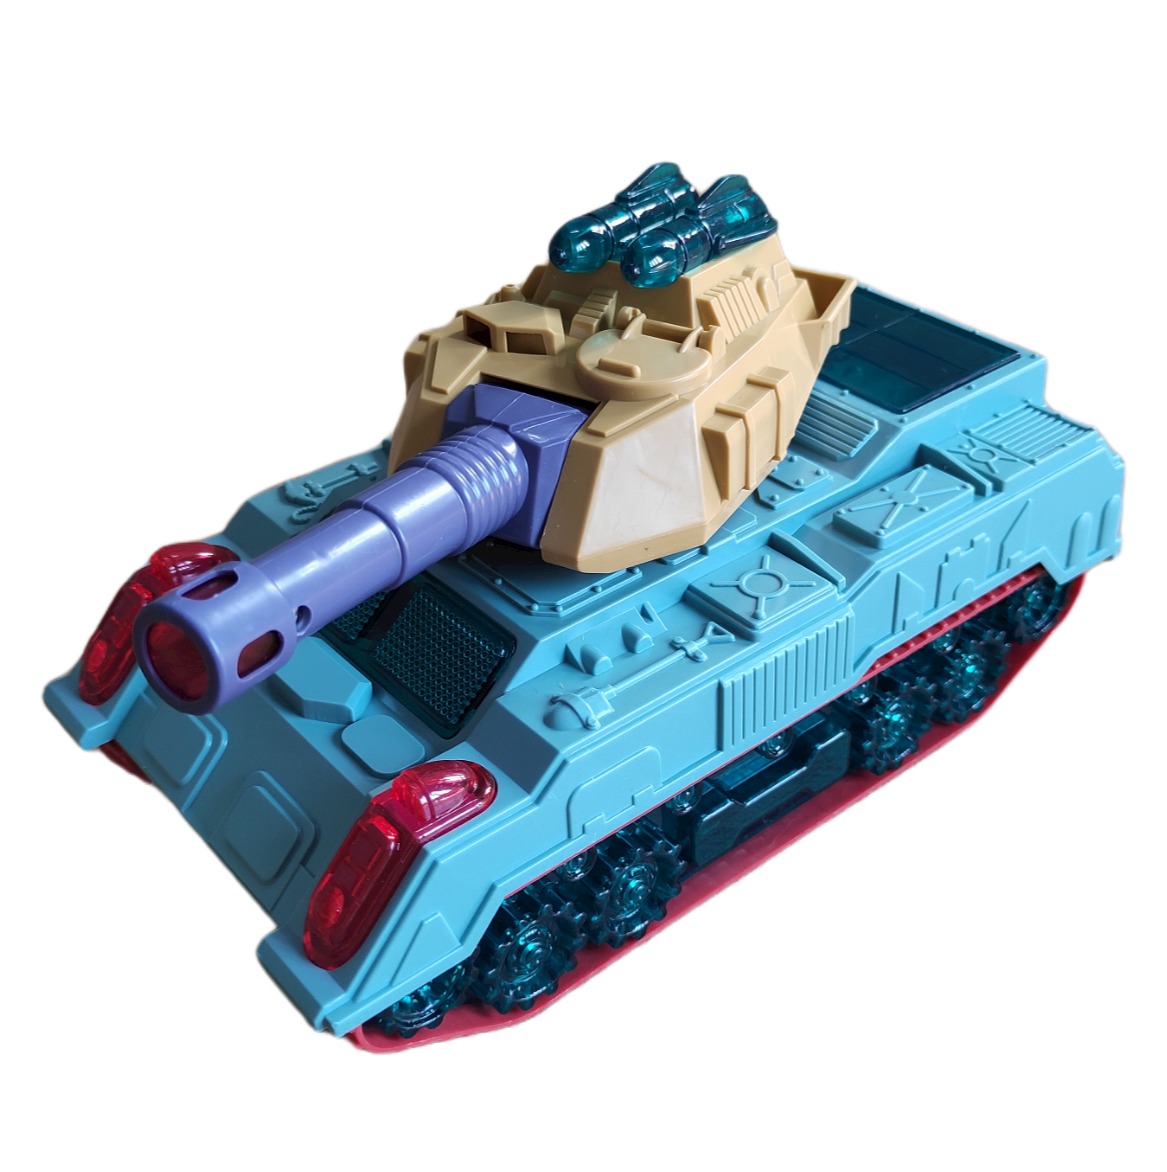 Bạn đang muốn tìm một món đồ chơi mô hình xe tăng để tăng sức sáng tạo và giảm căng thẳng? Hãy xem qua hình ảnh mô hình xe tăng đẹp nhất, từ chiếc Patton đầy uy lực, đến chiếc Leopard 2 tinh xảo với màu sắc tuyệt vời làm cho bạn có thể lựa chọn phù hợp cho mình.